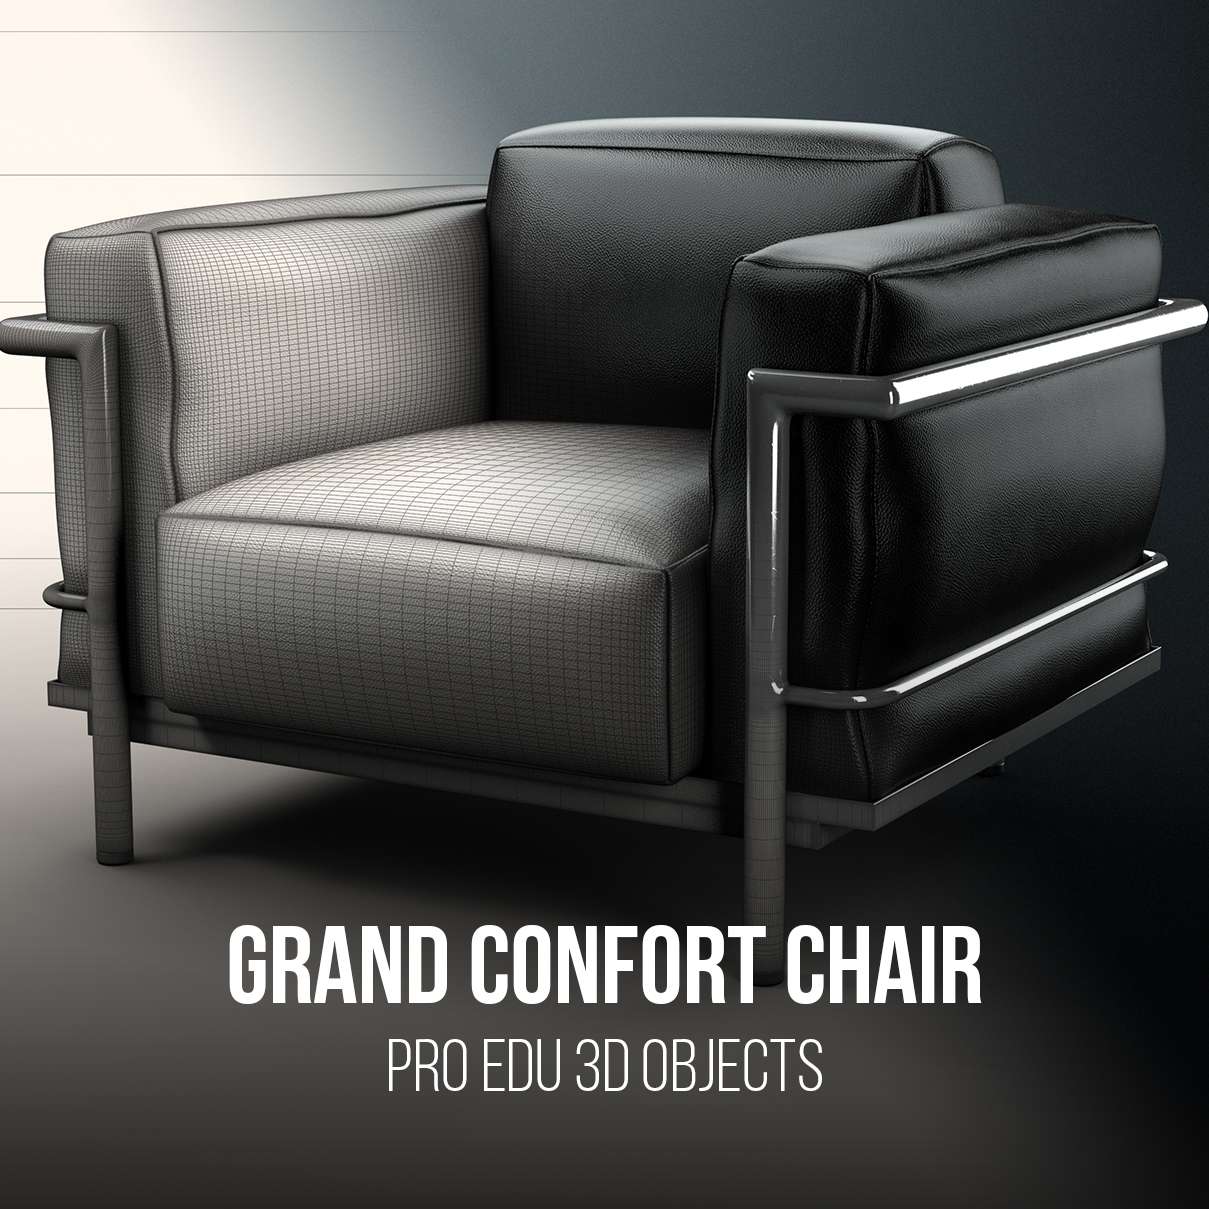 Grand Confort Chair 3D Model Photoshop | C4D FBX OBJ CGI - PRO EDU PRO EDU PRO EDU